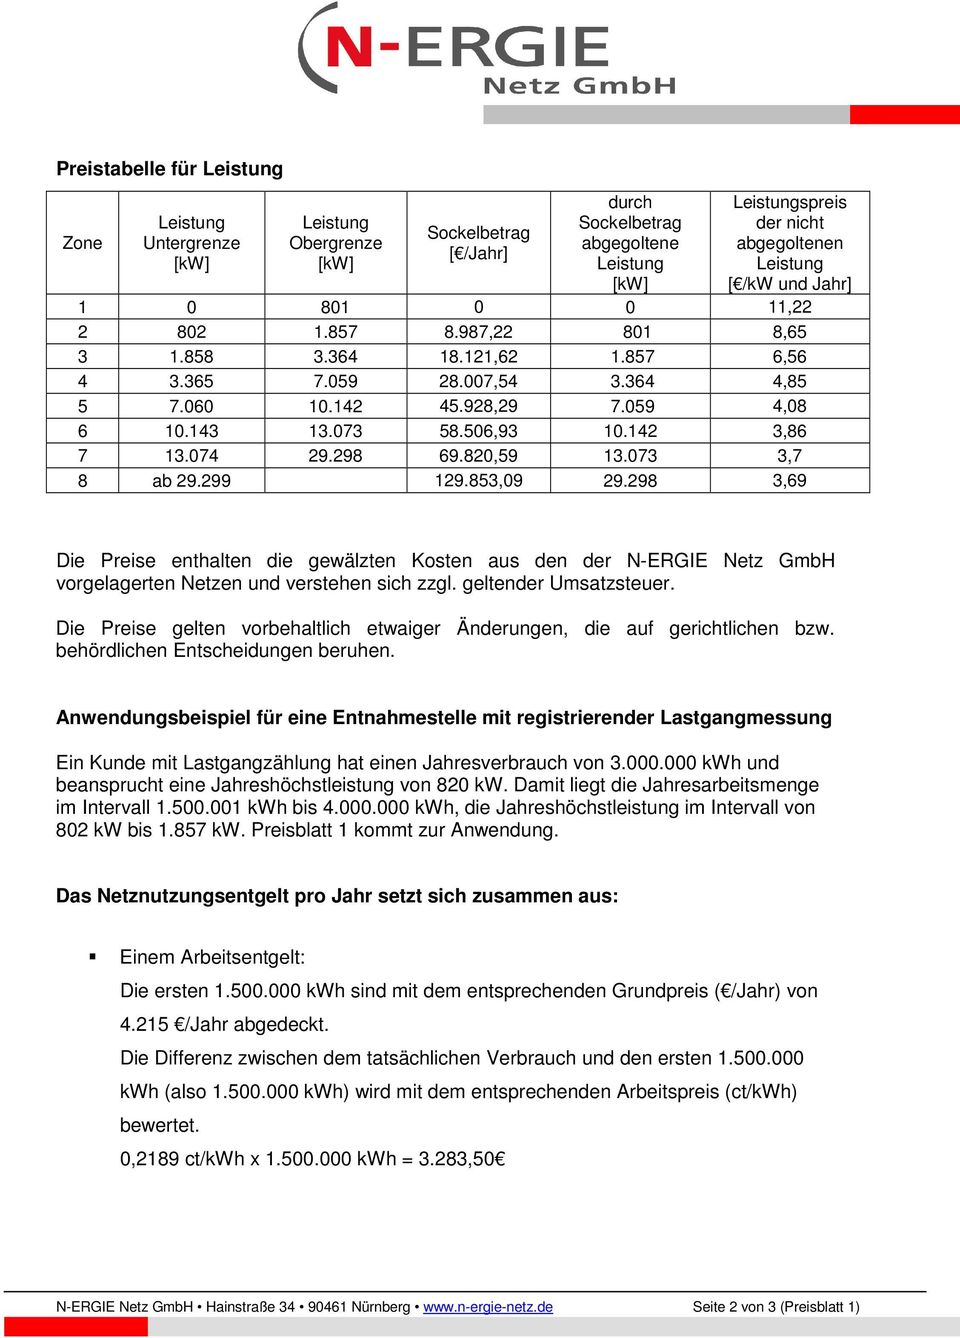 298 3,69 Die Preise enthalten die gewälzten Kosten aus den der N-ERGIE Netz GmbH vorgelagerten Netzen und verstehen sich zzgl. geltender Umsatzsteuer.